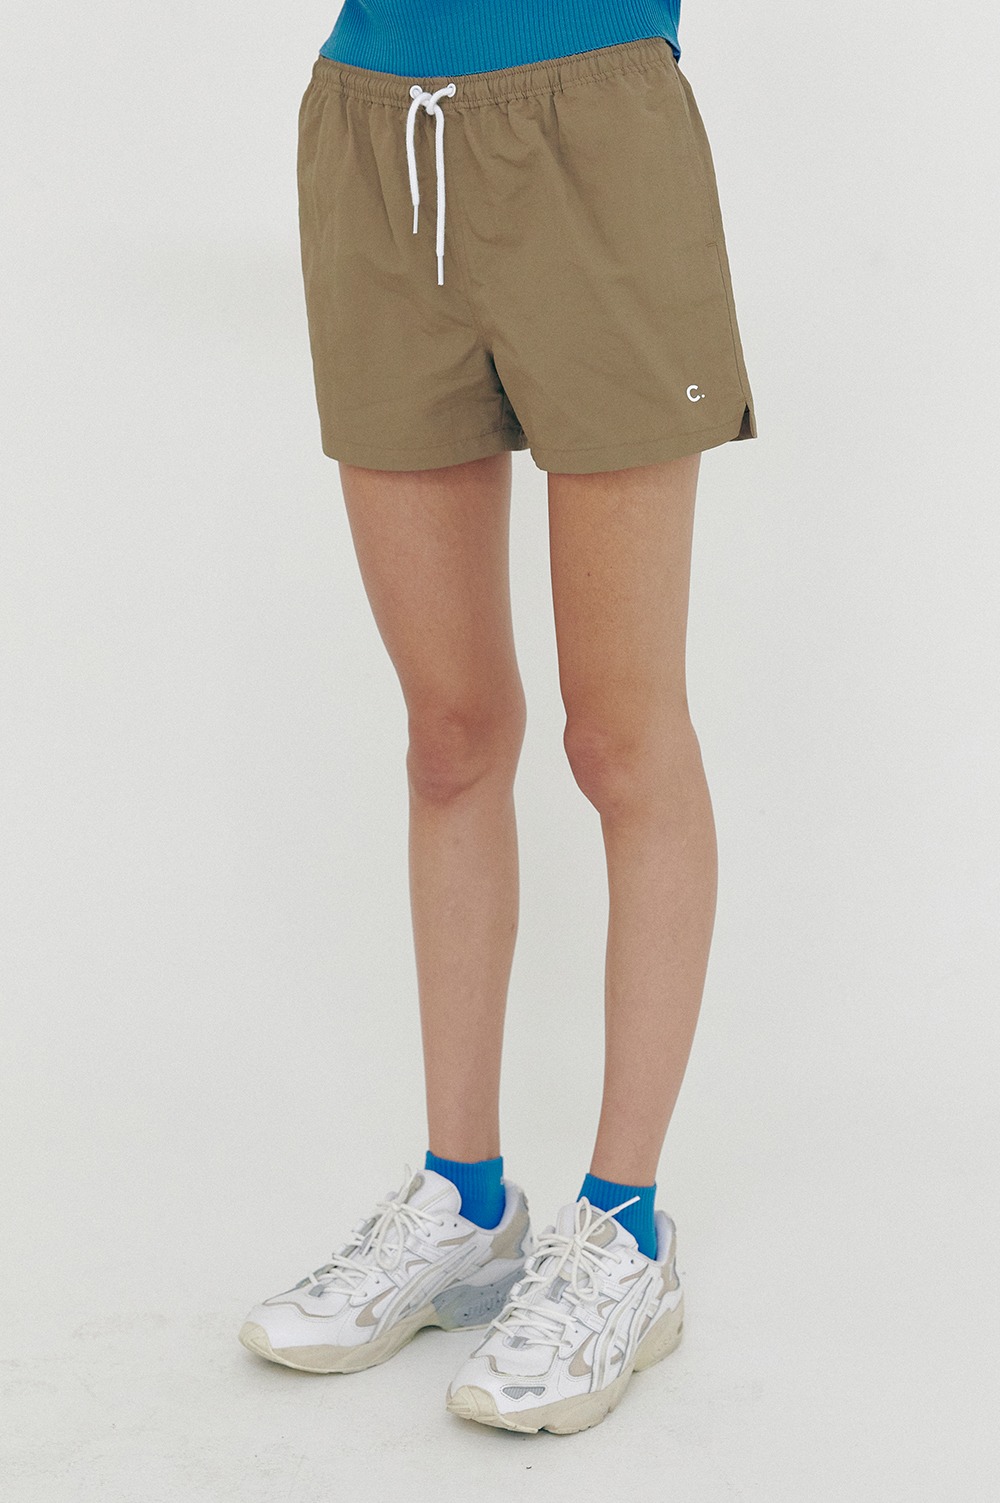 clove - [SS21 clove] New Summer Shorts_Women Khaki